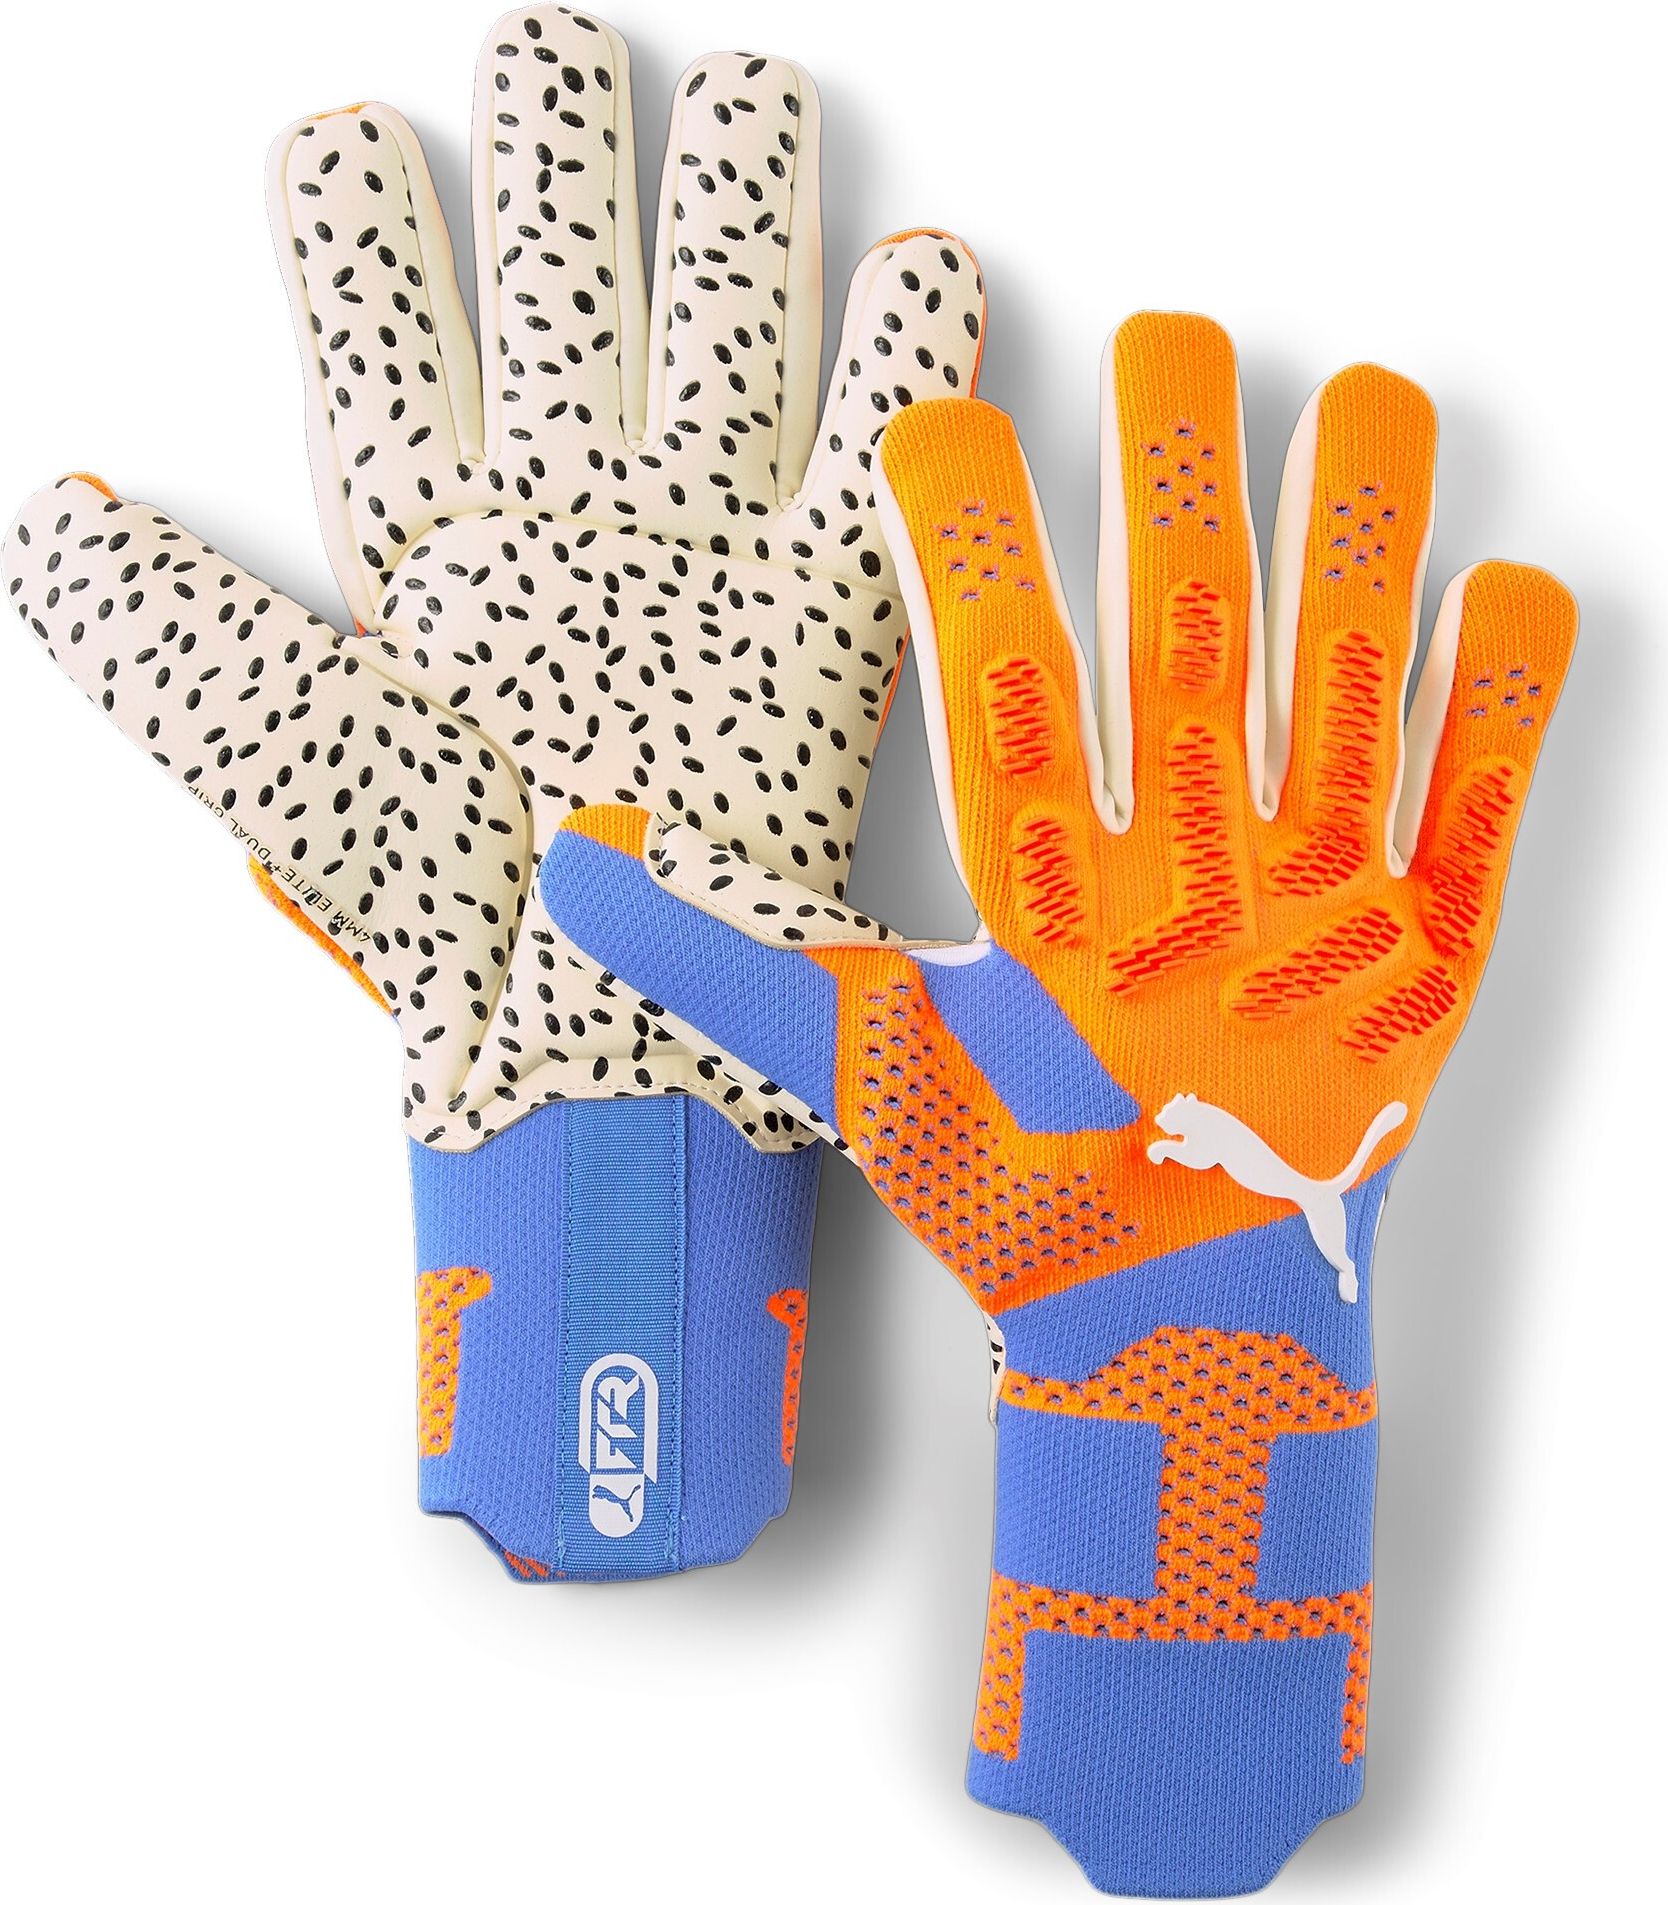 Ensemble de 12 paires de gants de protection orange en 58% de